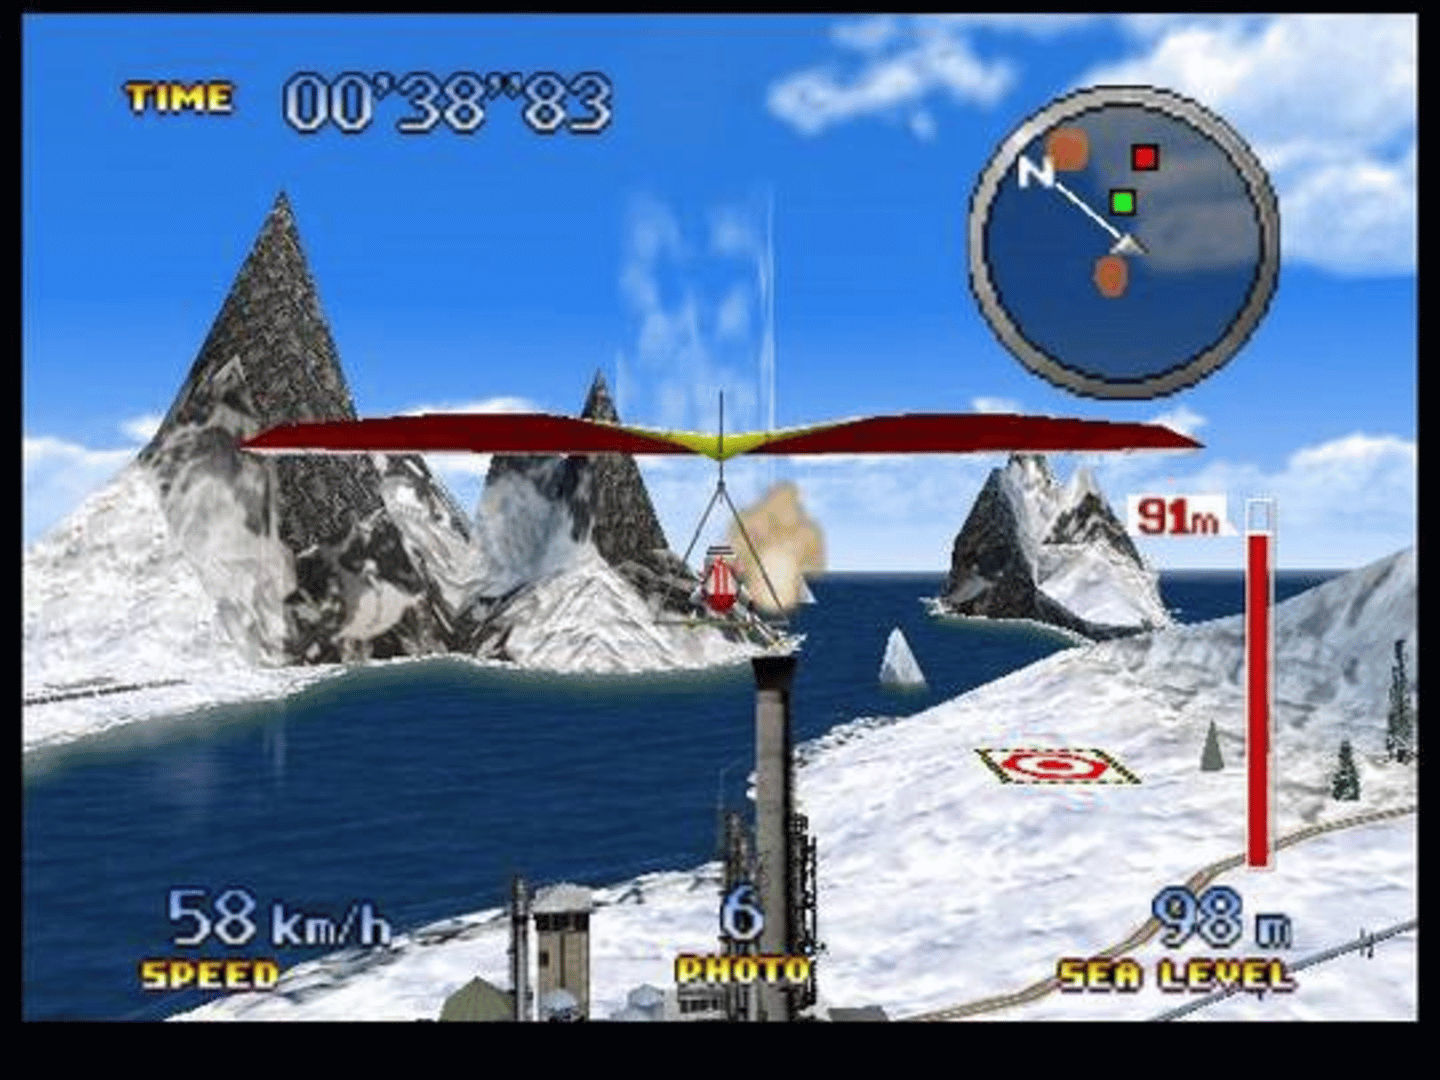 Pilotwings 64 screenshot